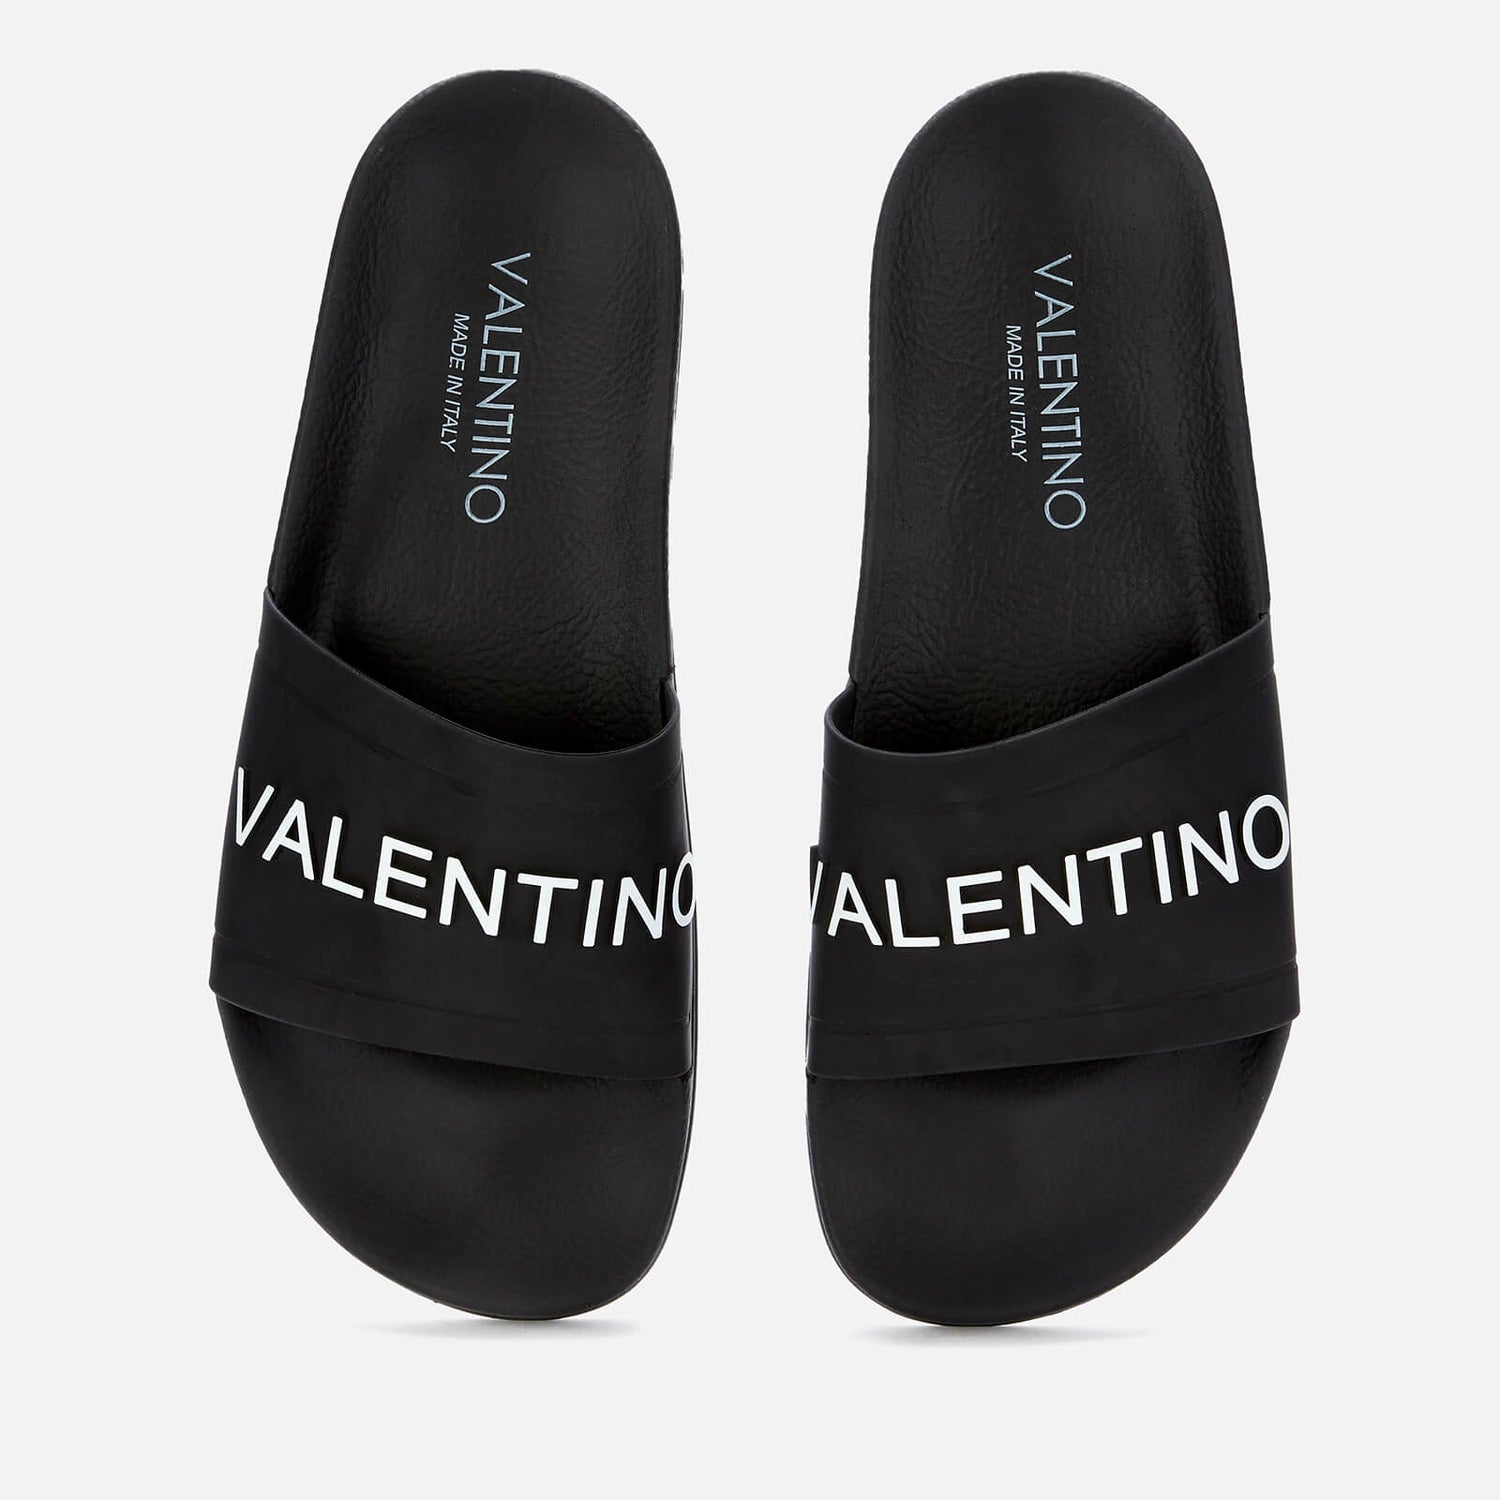 Valentino Shoes Men's Slide Sandals - Black